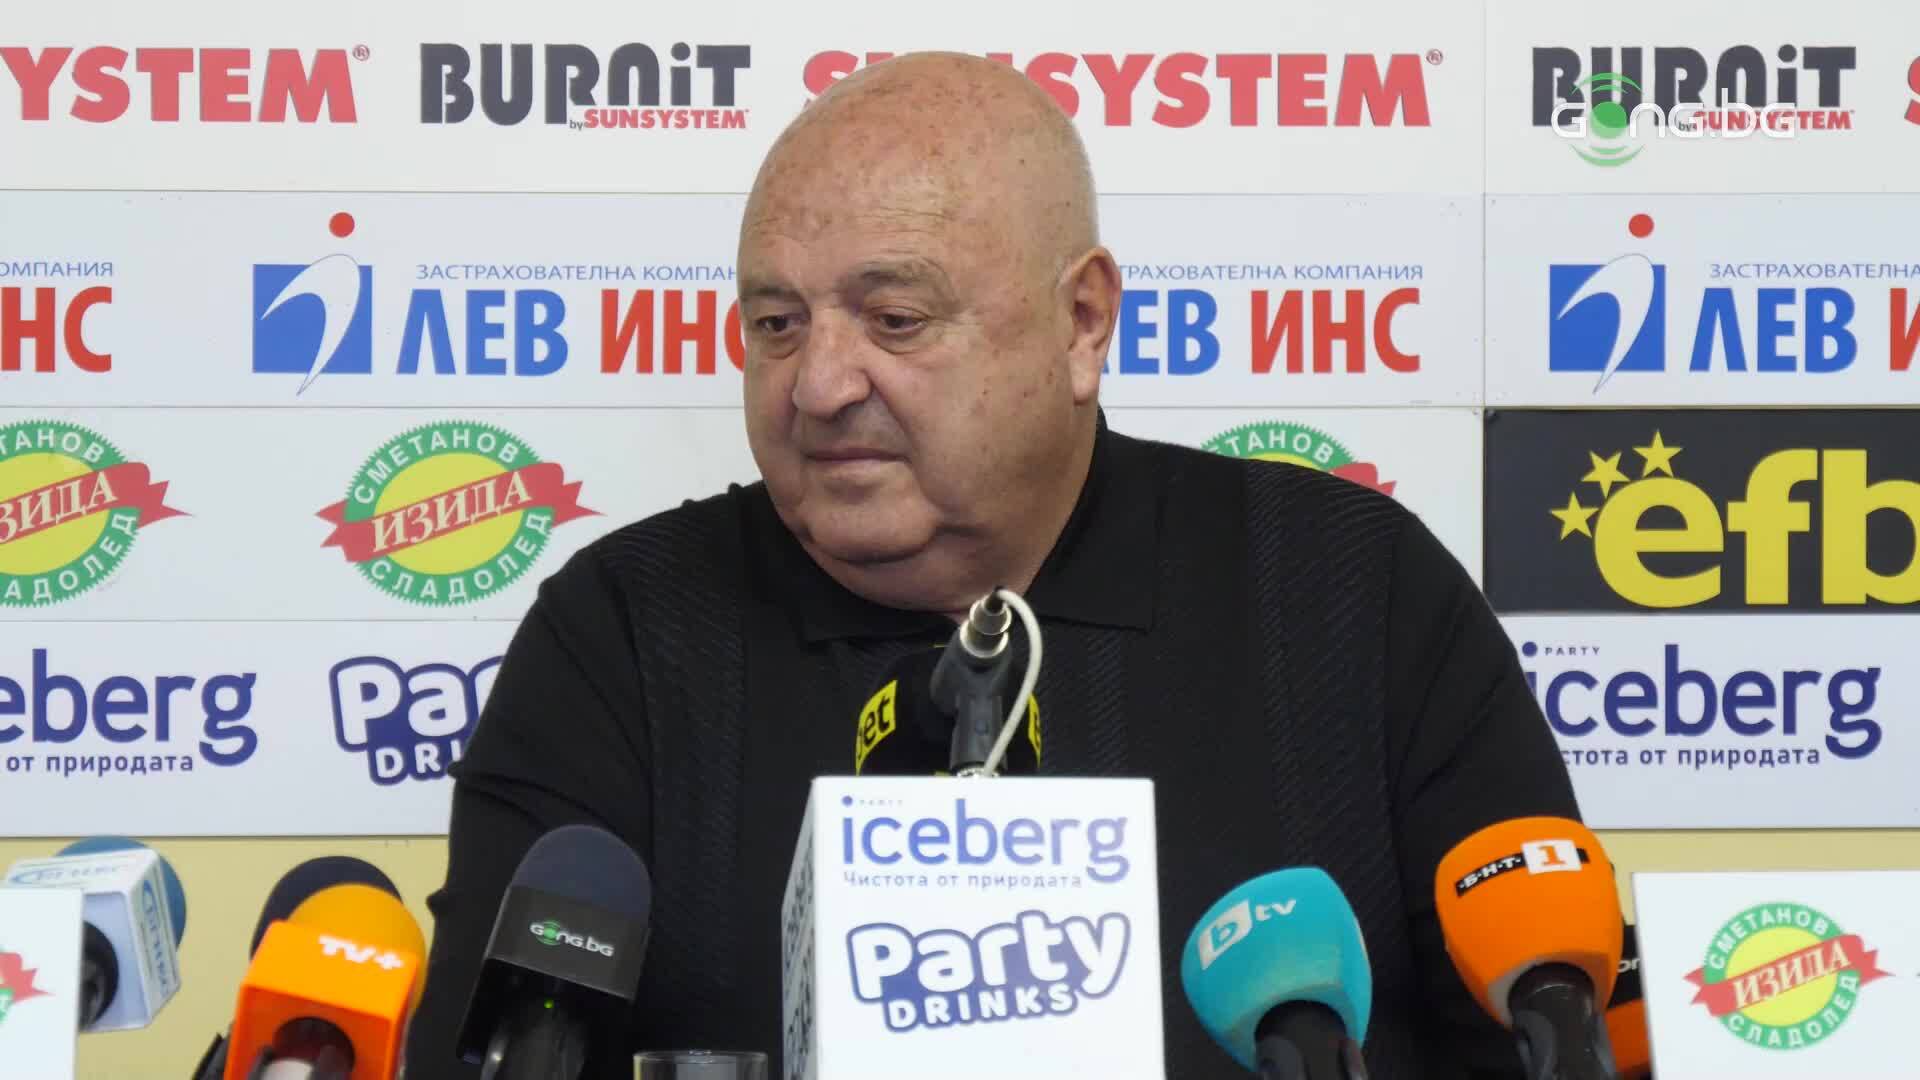 Венци Стефанов за уволнението на Акрапович: Изненадан? Това бе предизвестена смърт